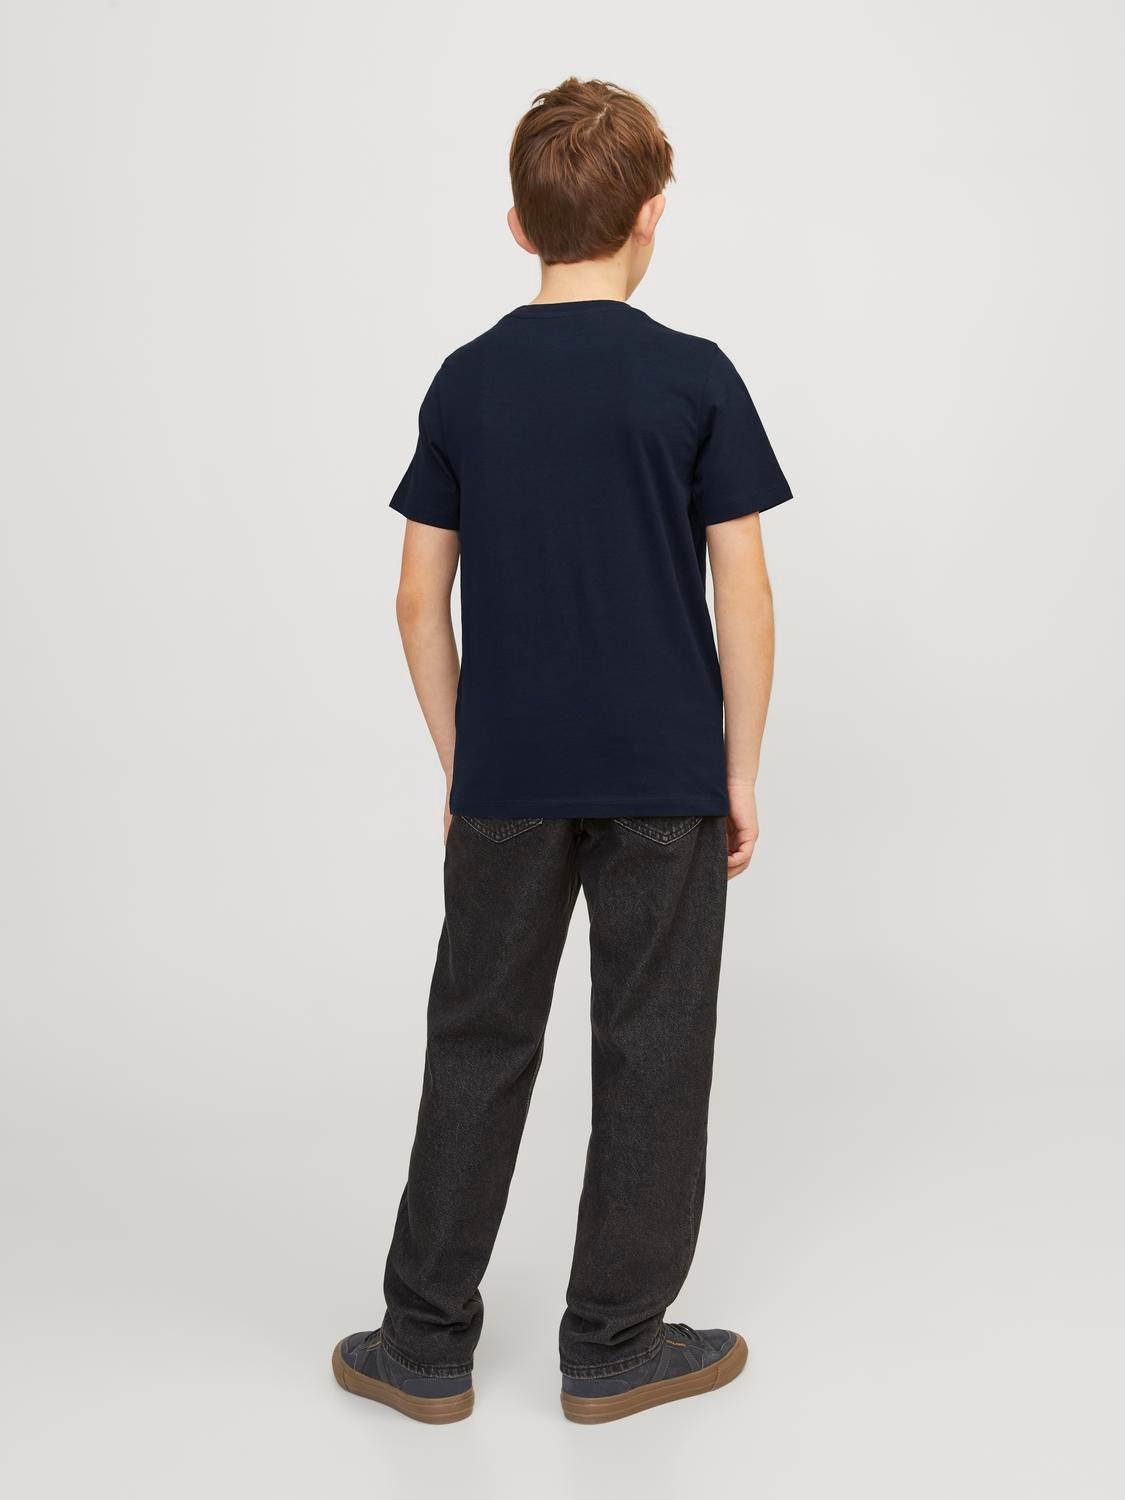 Jack & Jones T-shirt Imprimé Pour les garçons -Navy Blazer - 12250800